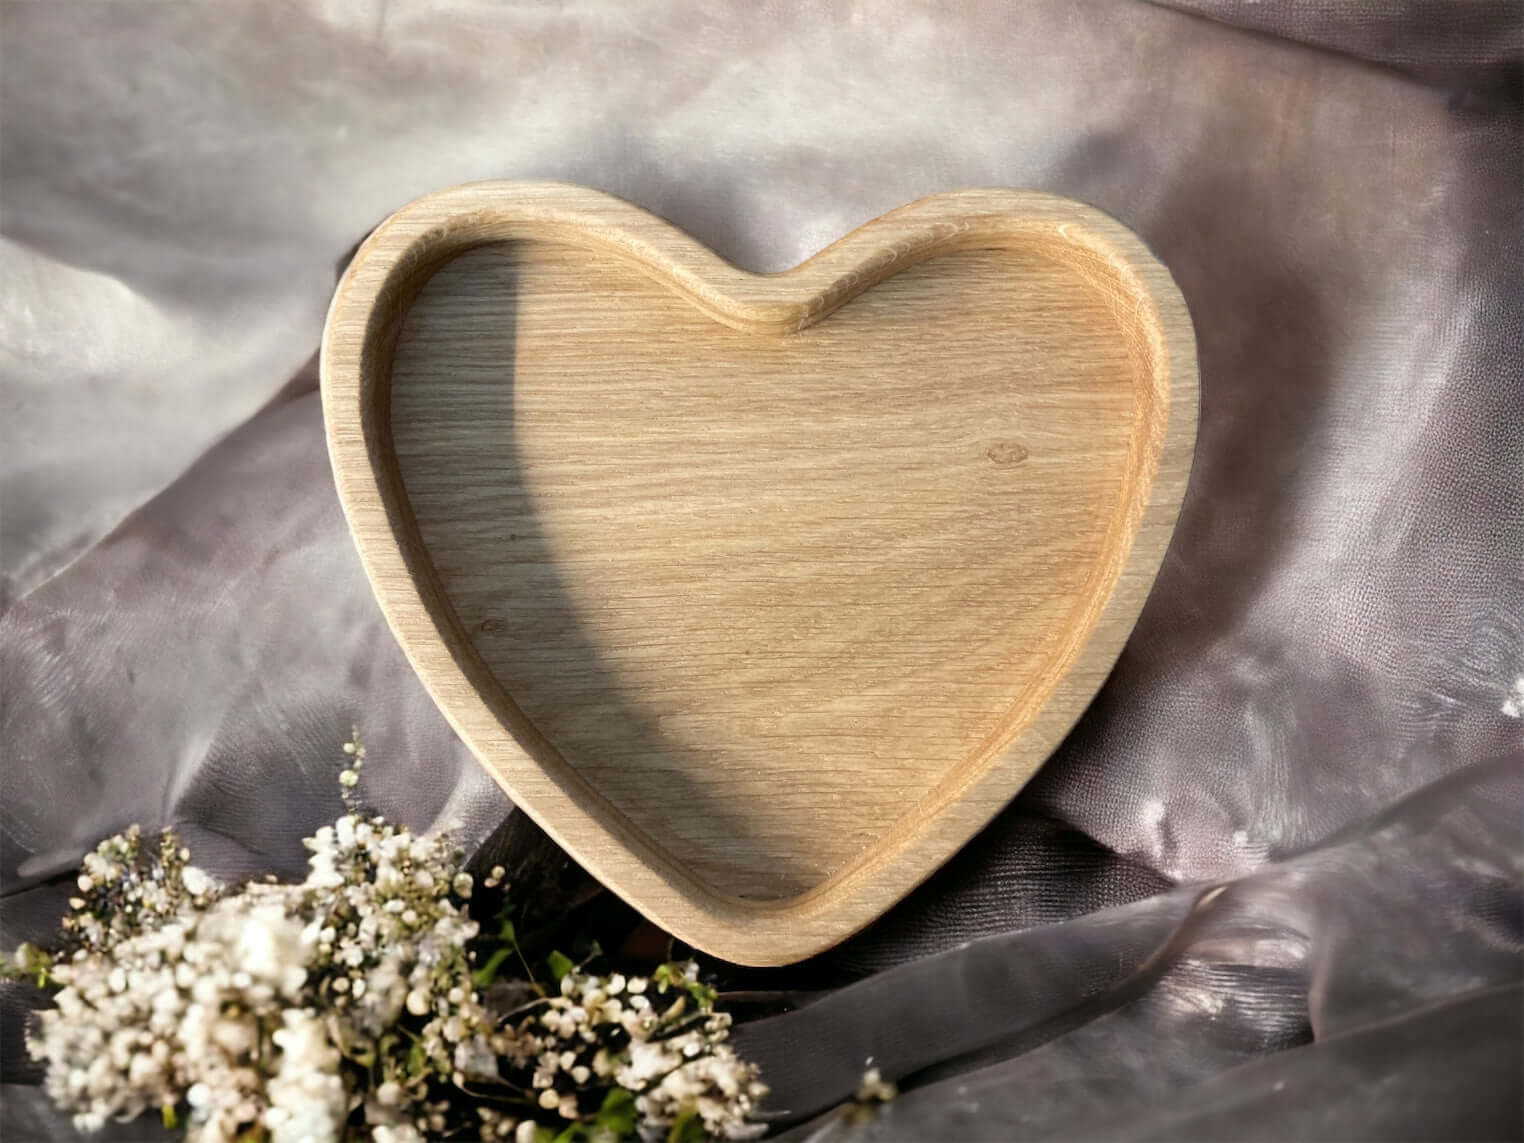  Drevená miska - Srdce 17,5 cm z masívneho dreva ošetrená olejom pre bezpečné použitie